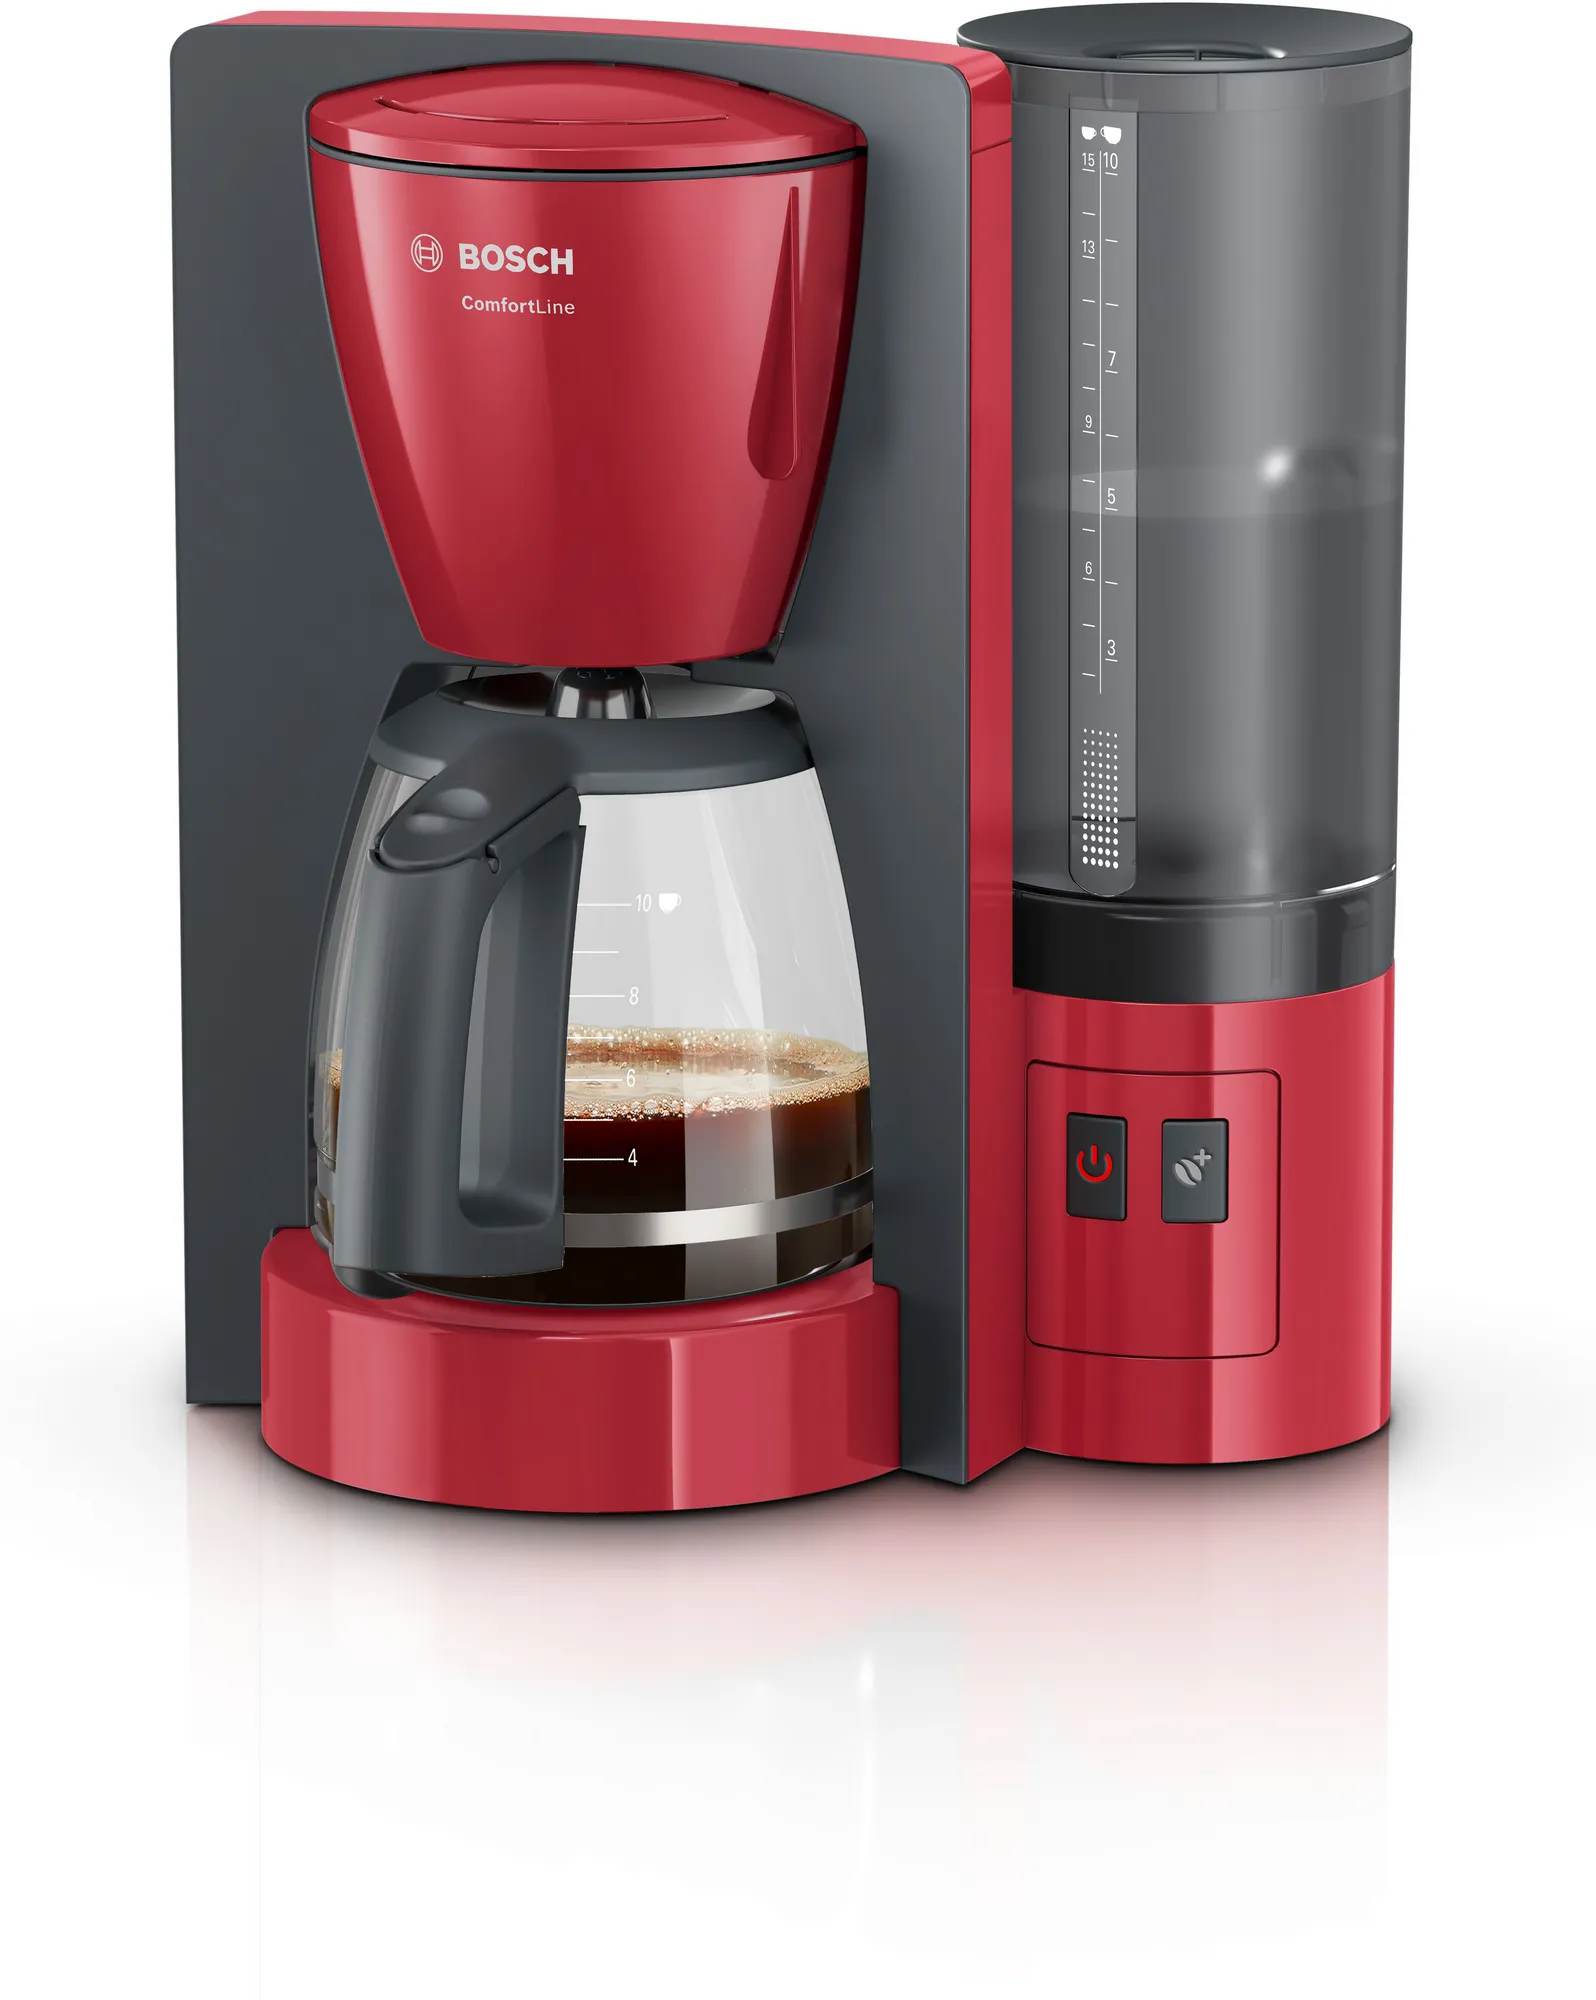 ماكينة تحضير القهوة كومفورت لاين، موديل TKA6A044، بلون احمر من بوش ضمان محلي 2 سنوات